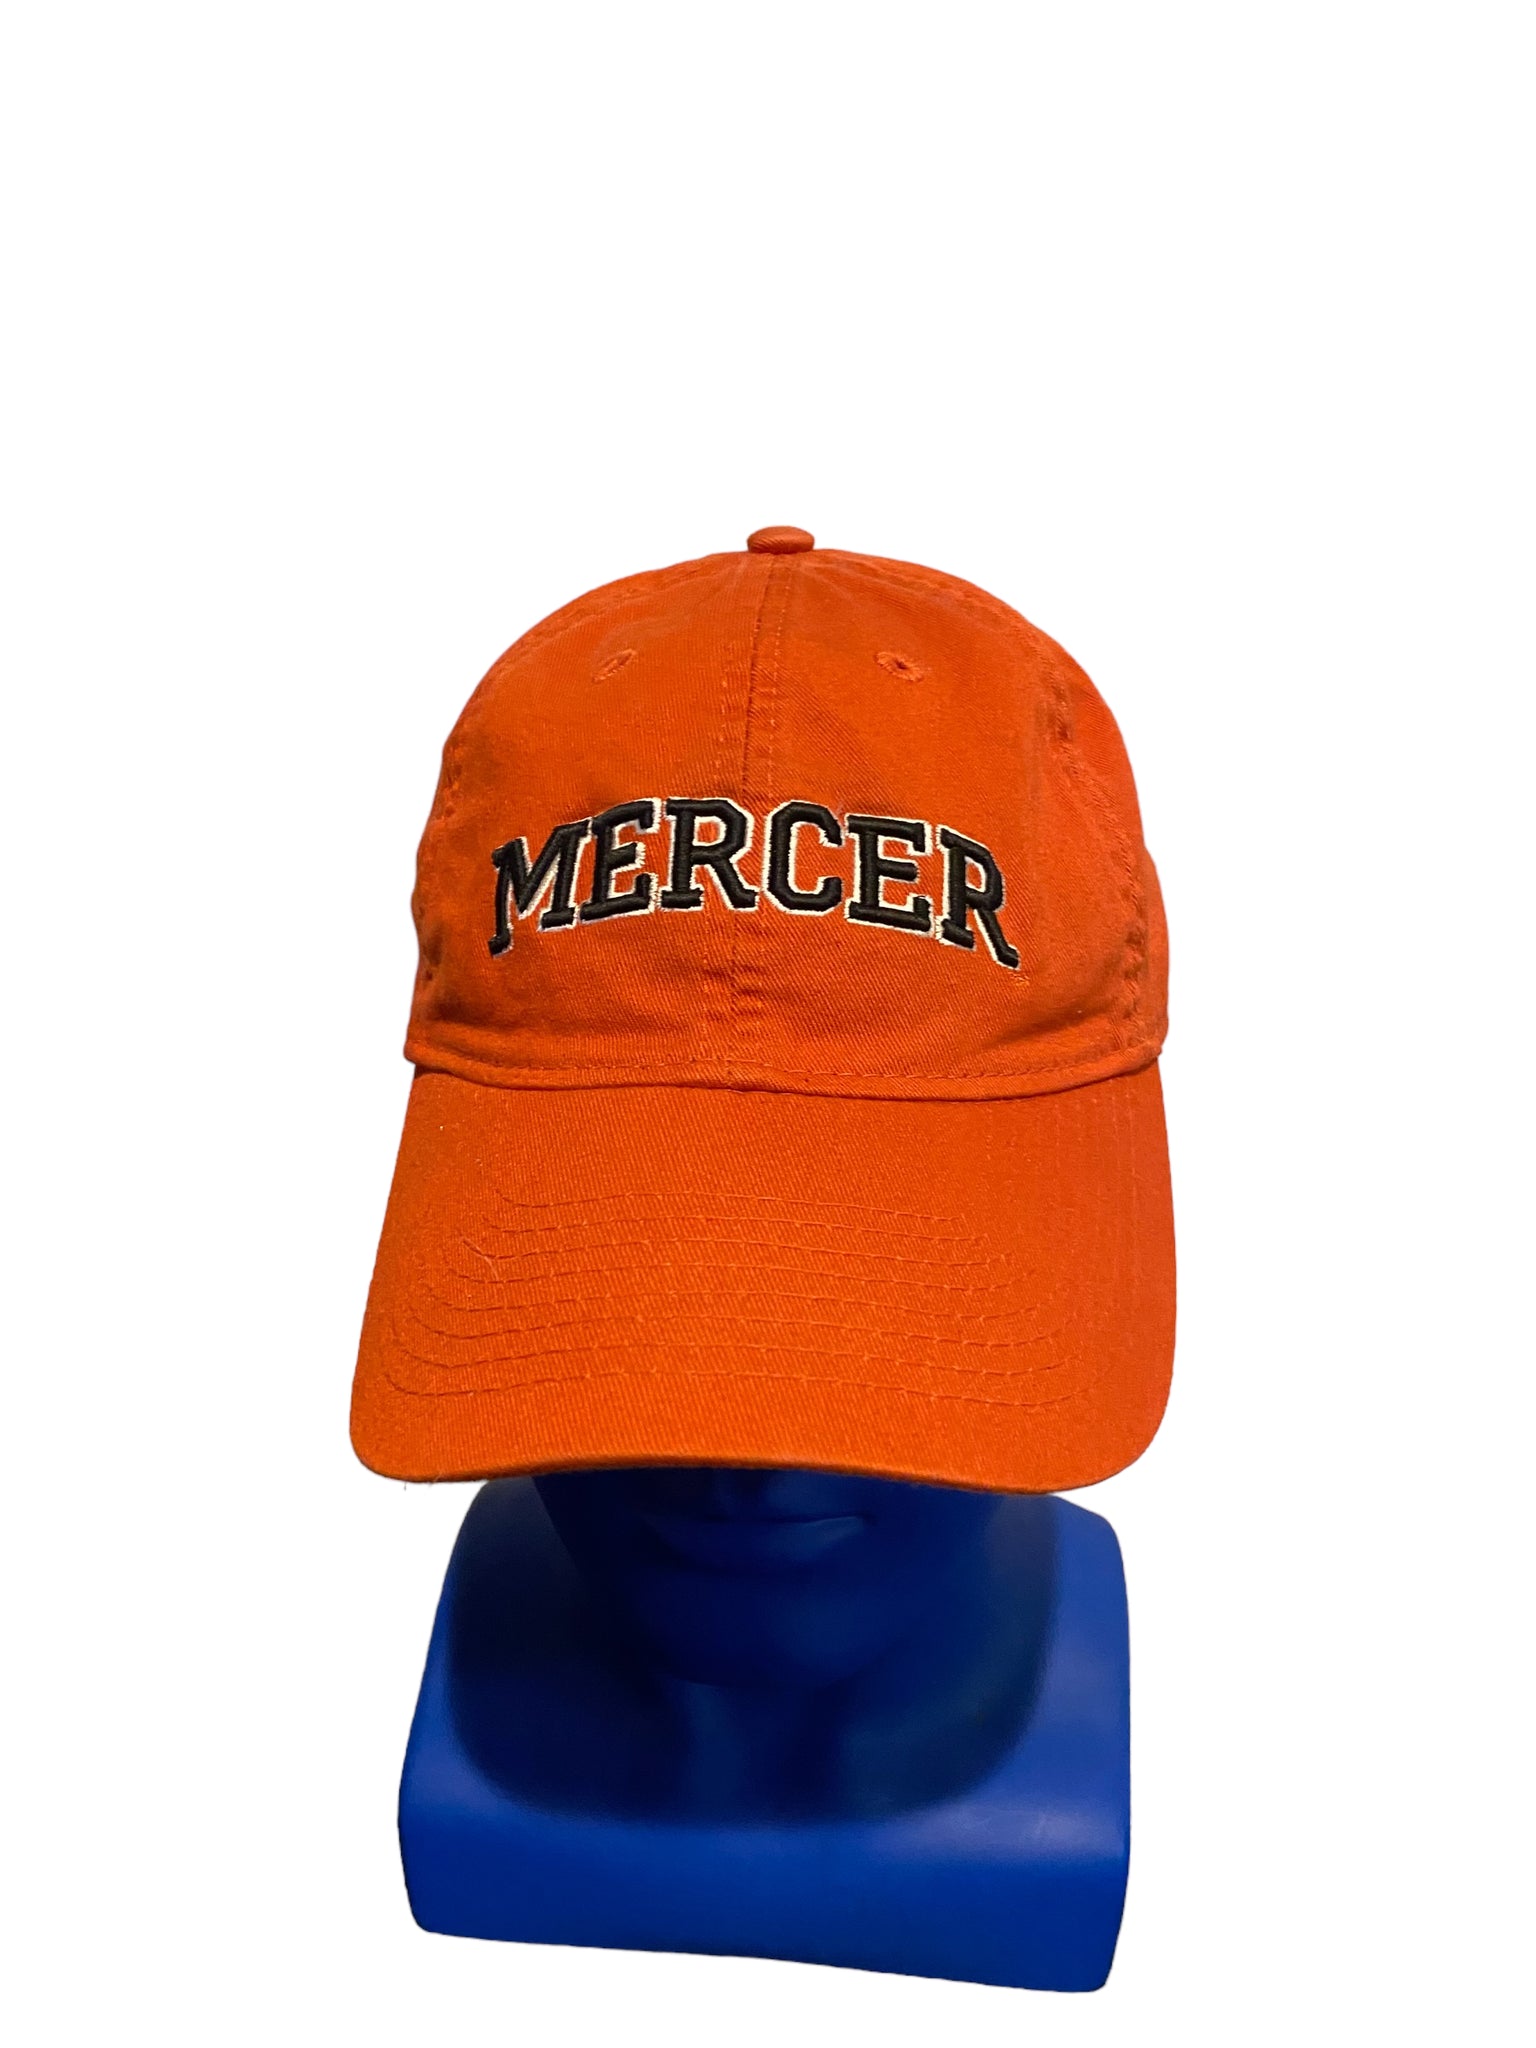 legacy hats mercer embroidered Black Script Adjustable Strap Dad Hat